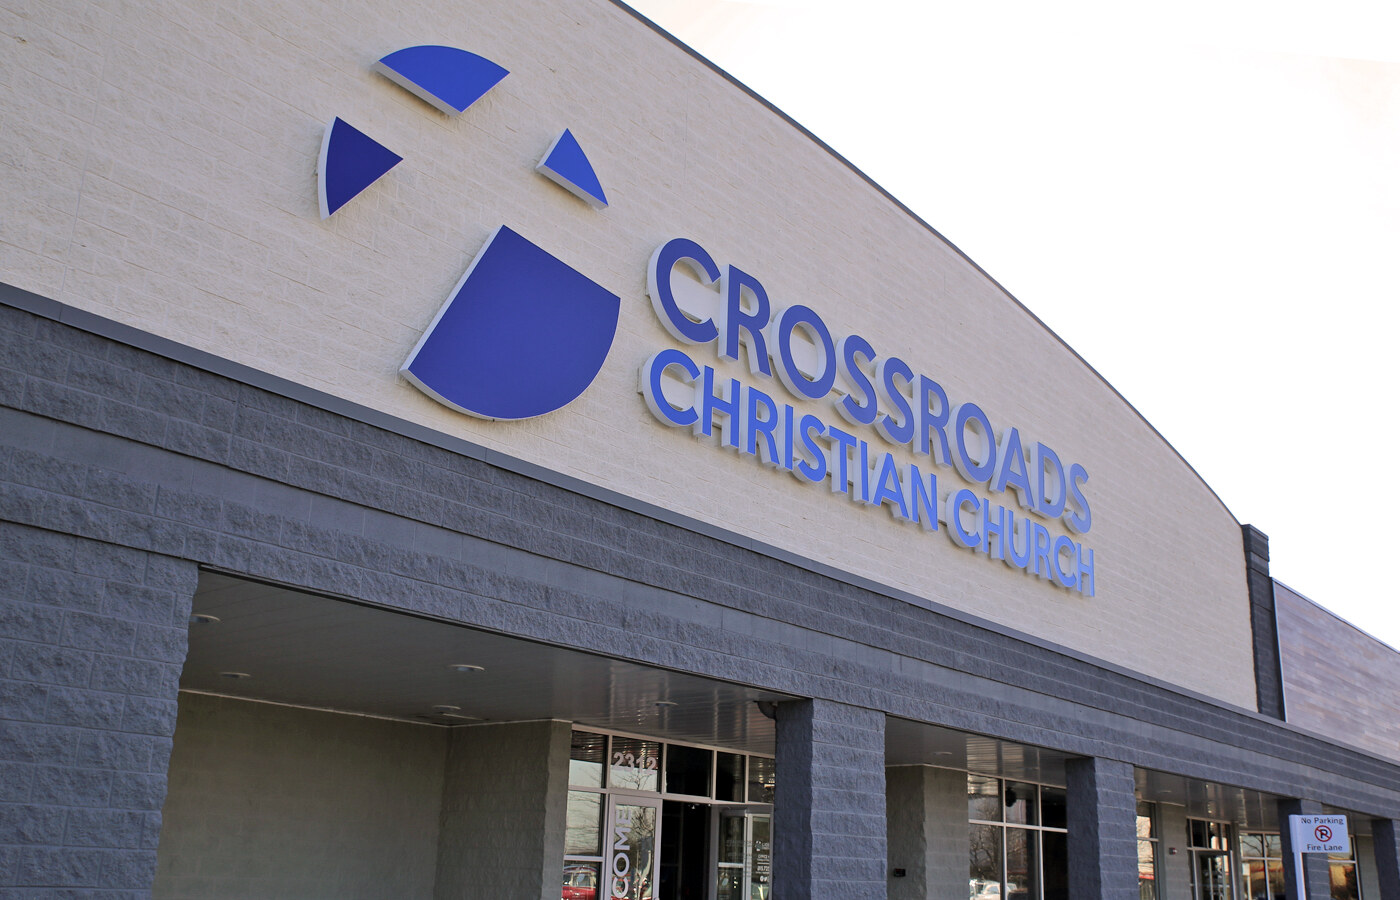 Ethos Workshop Crossroads Church